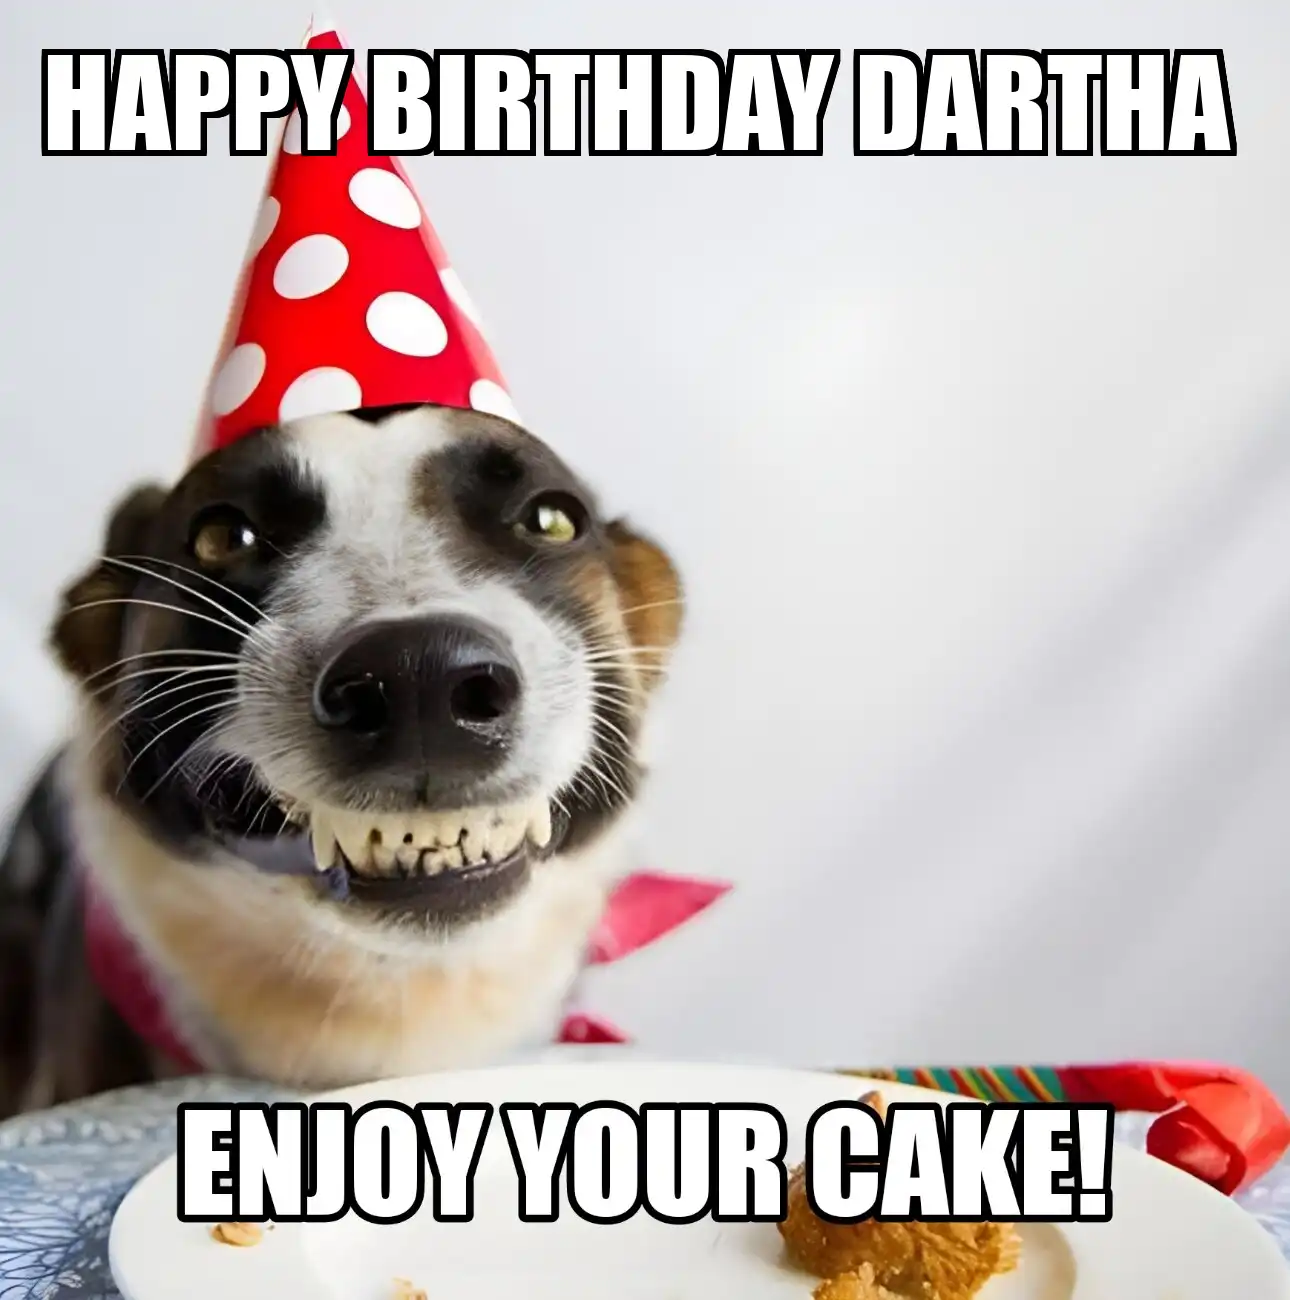 Happy Birthday Dartha Enjoy Your Cake Dog Meme